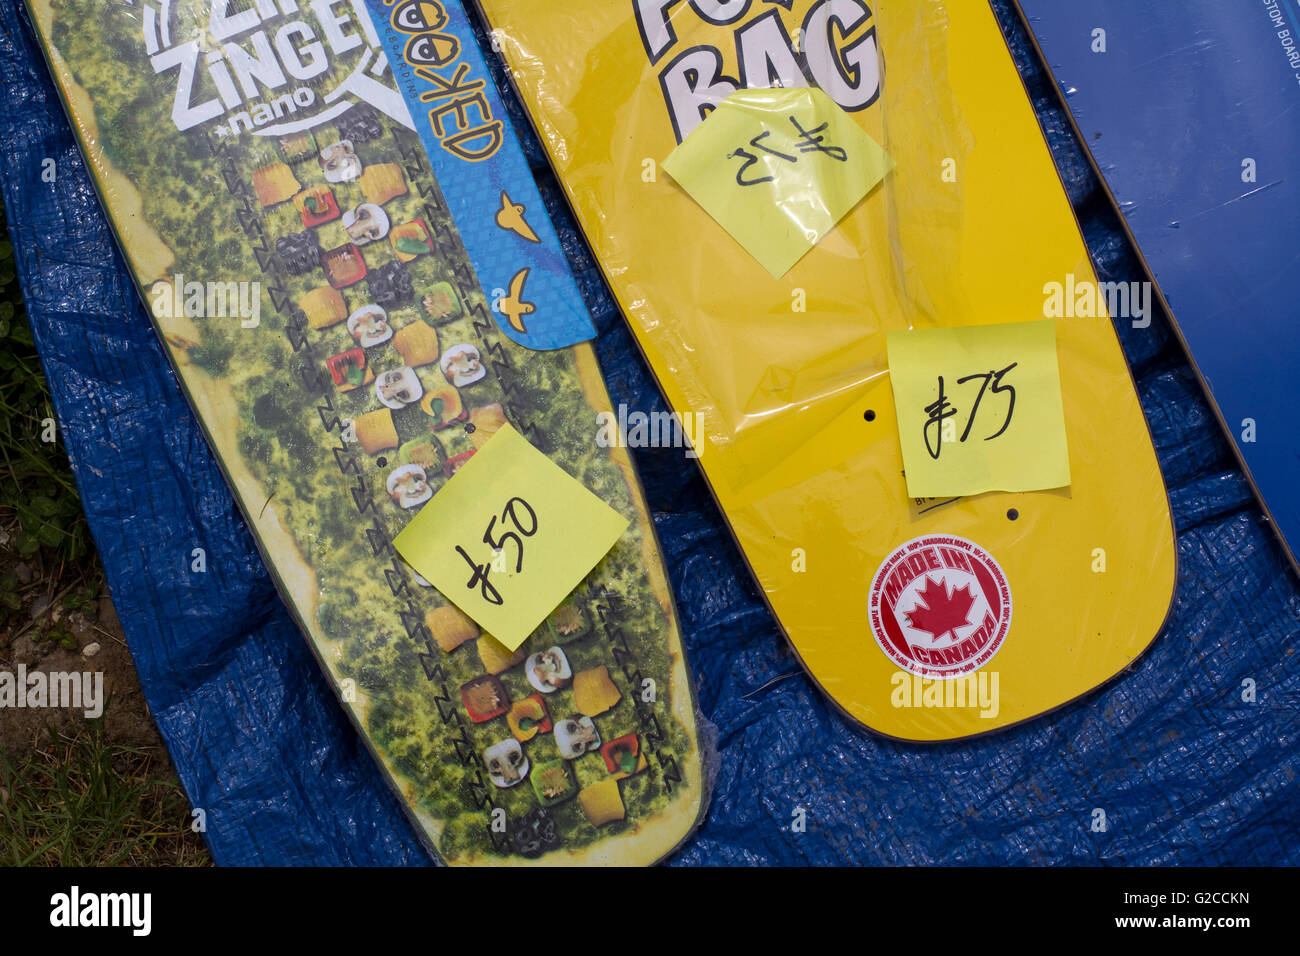 Couleur/couleur vive skateboard decks à vendre Banque D'Images